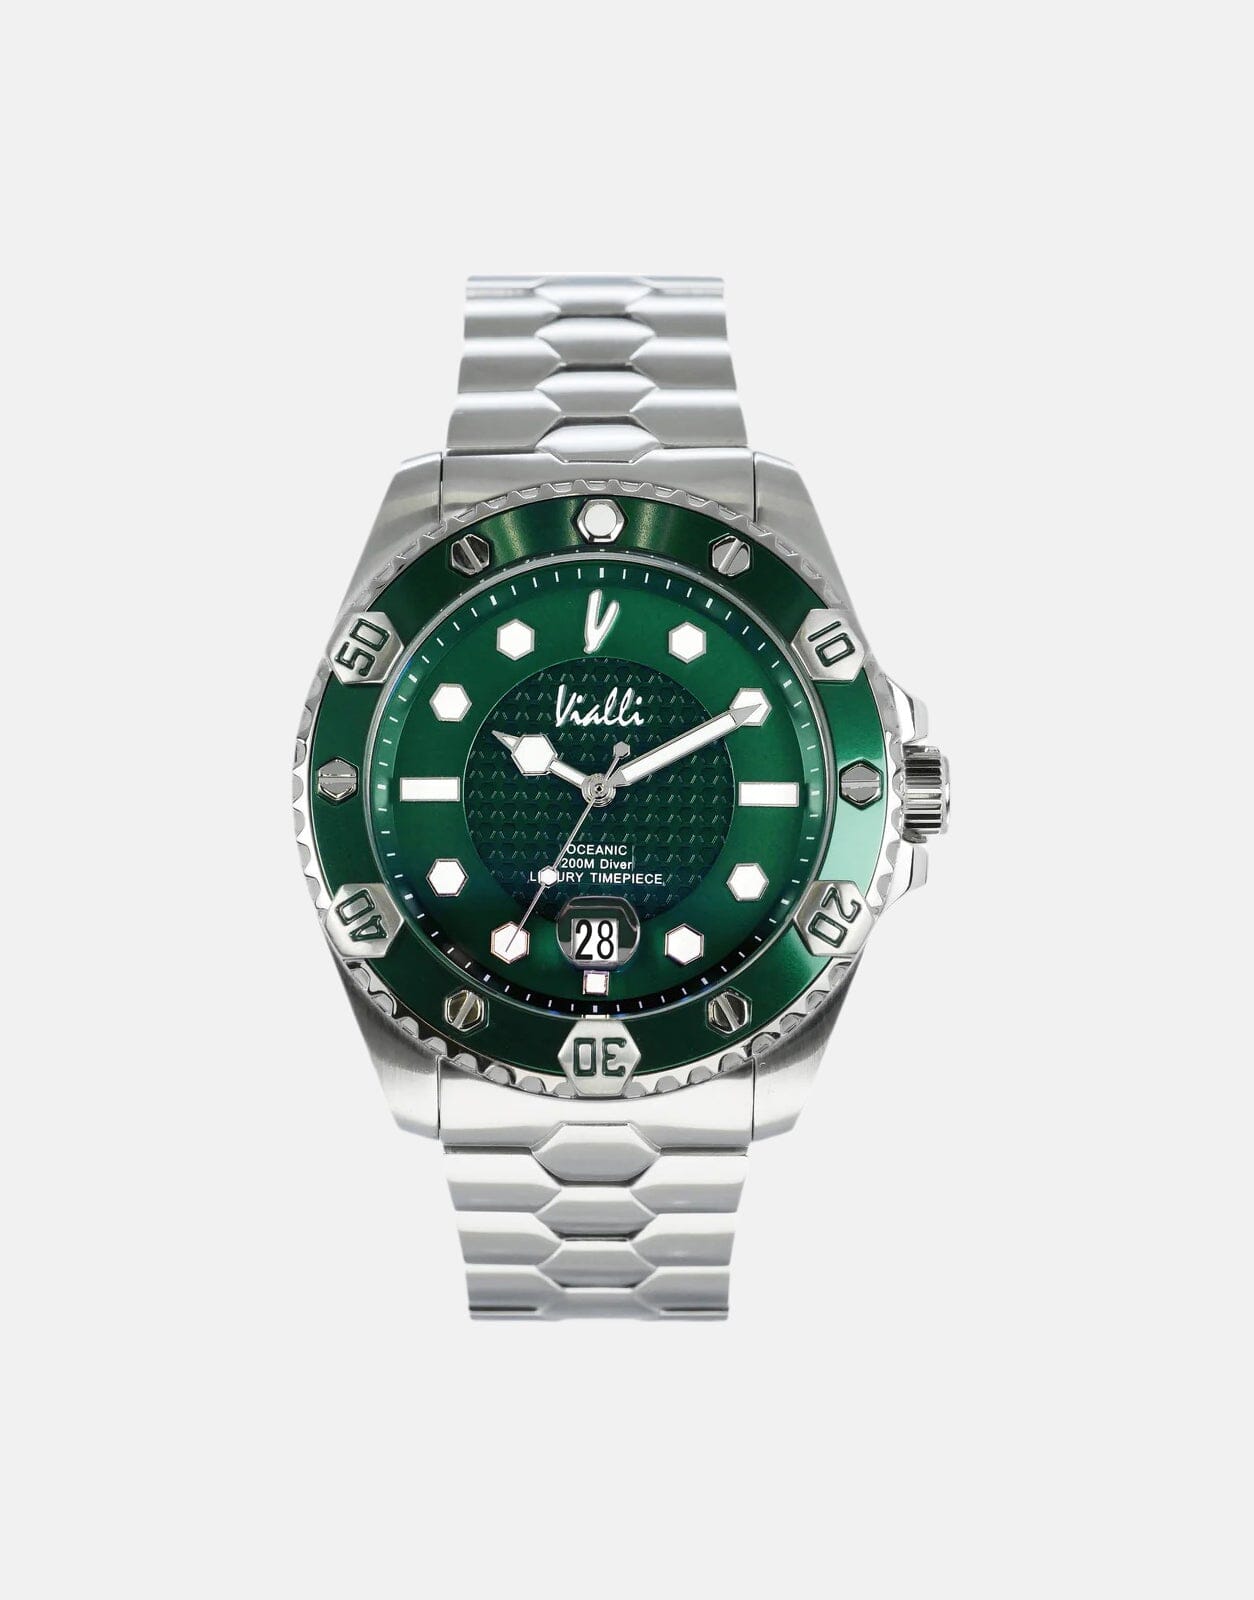 Vialli Elba Oceanic Green/Silver Stainless Steel Watch - Subwear